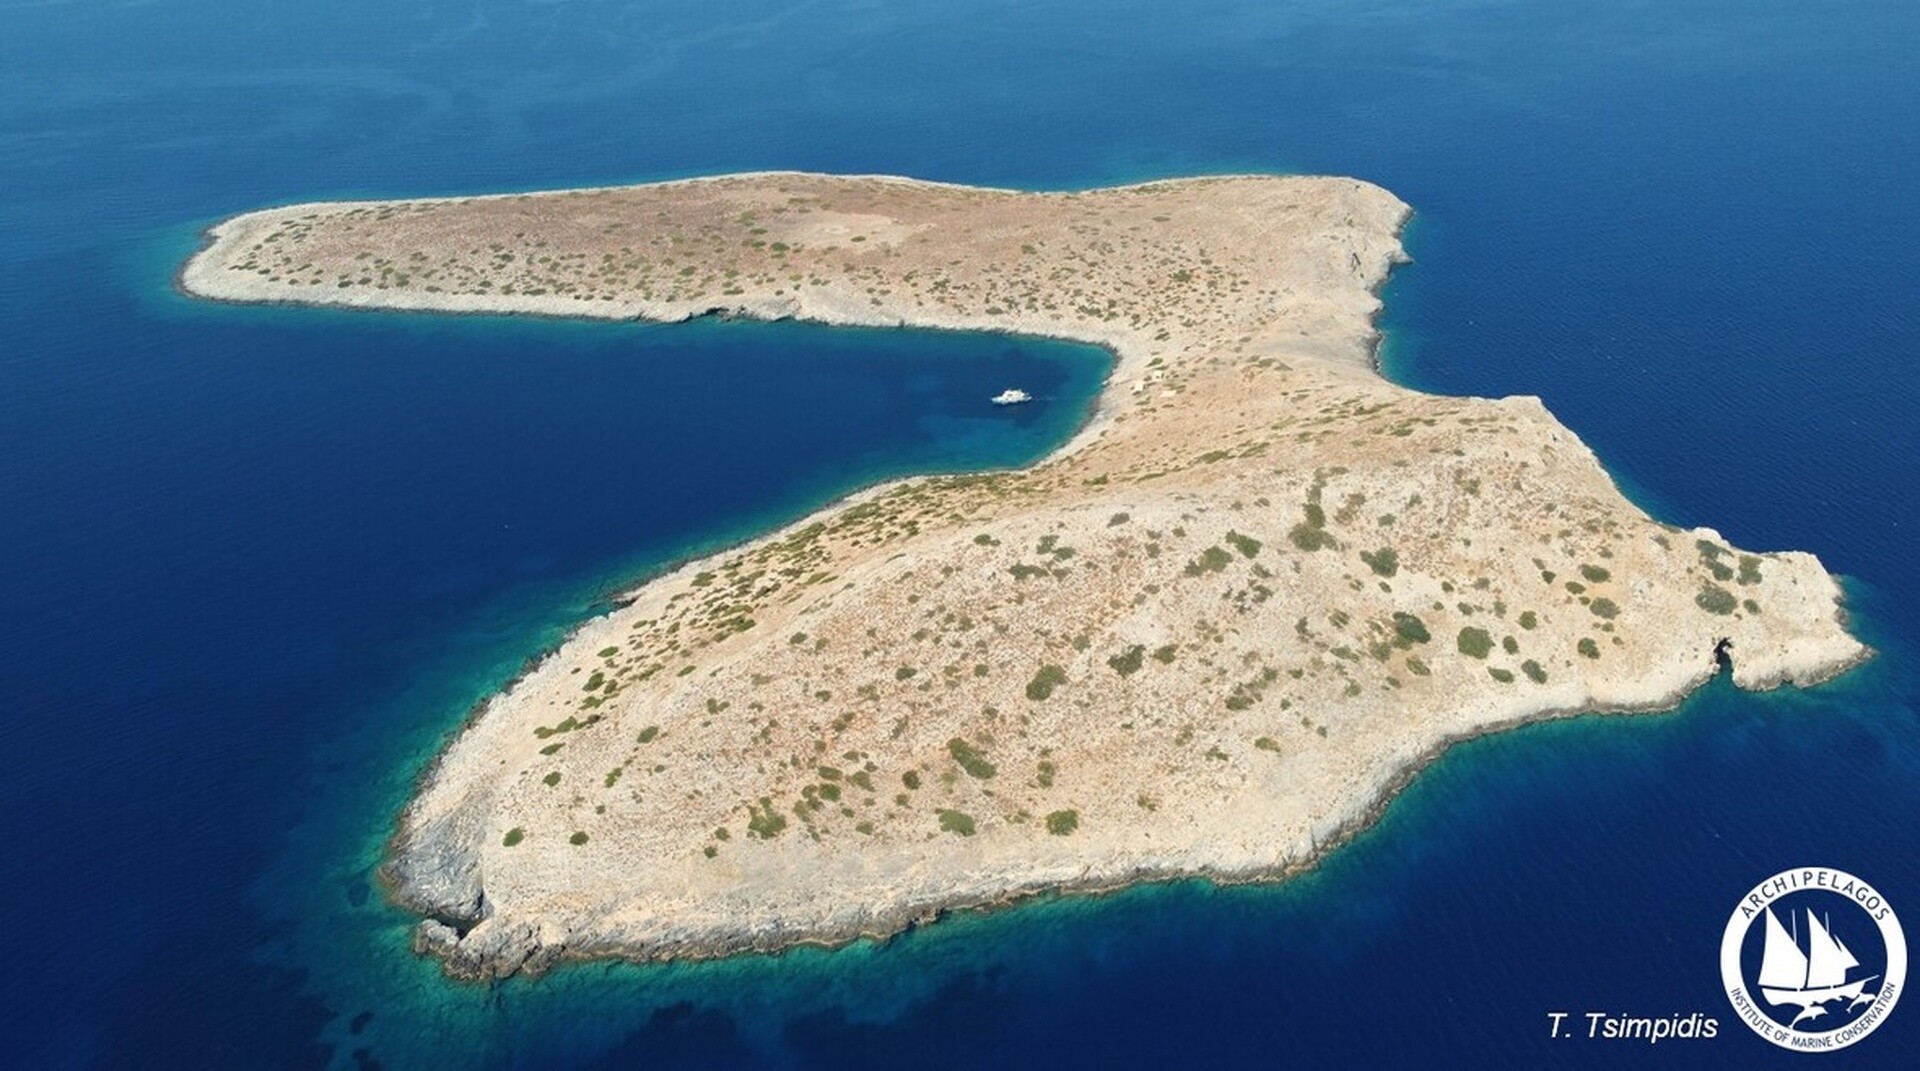 Τα μικρά νησιά του Αιγαίου εκπέμπουν SOS: Από την ακμή της αρχαιότητας, στη σύγχρονη ερημοποίηση